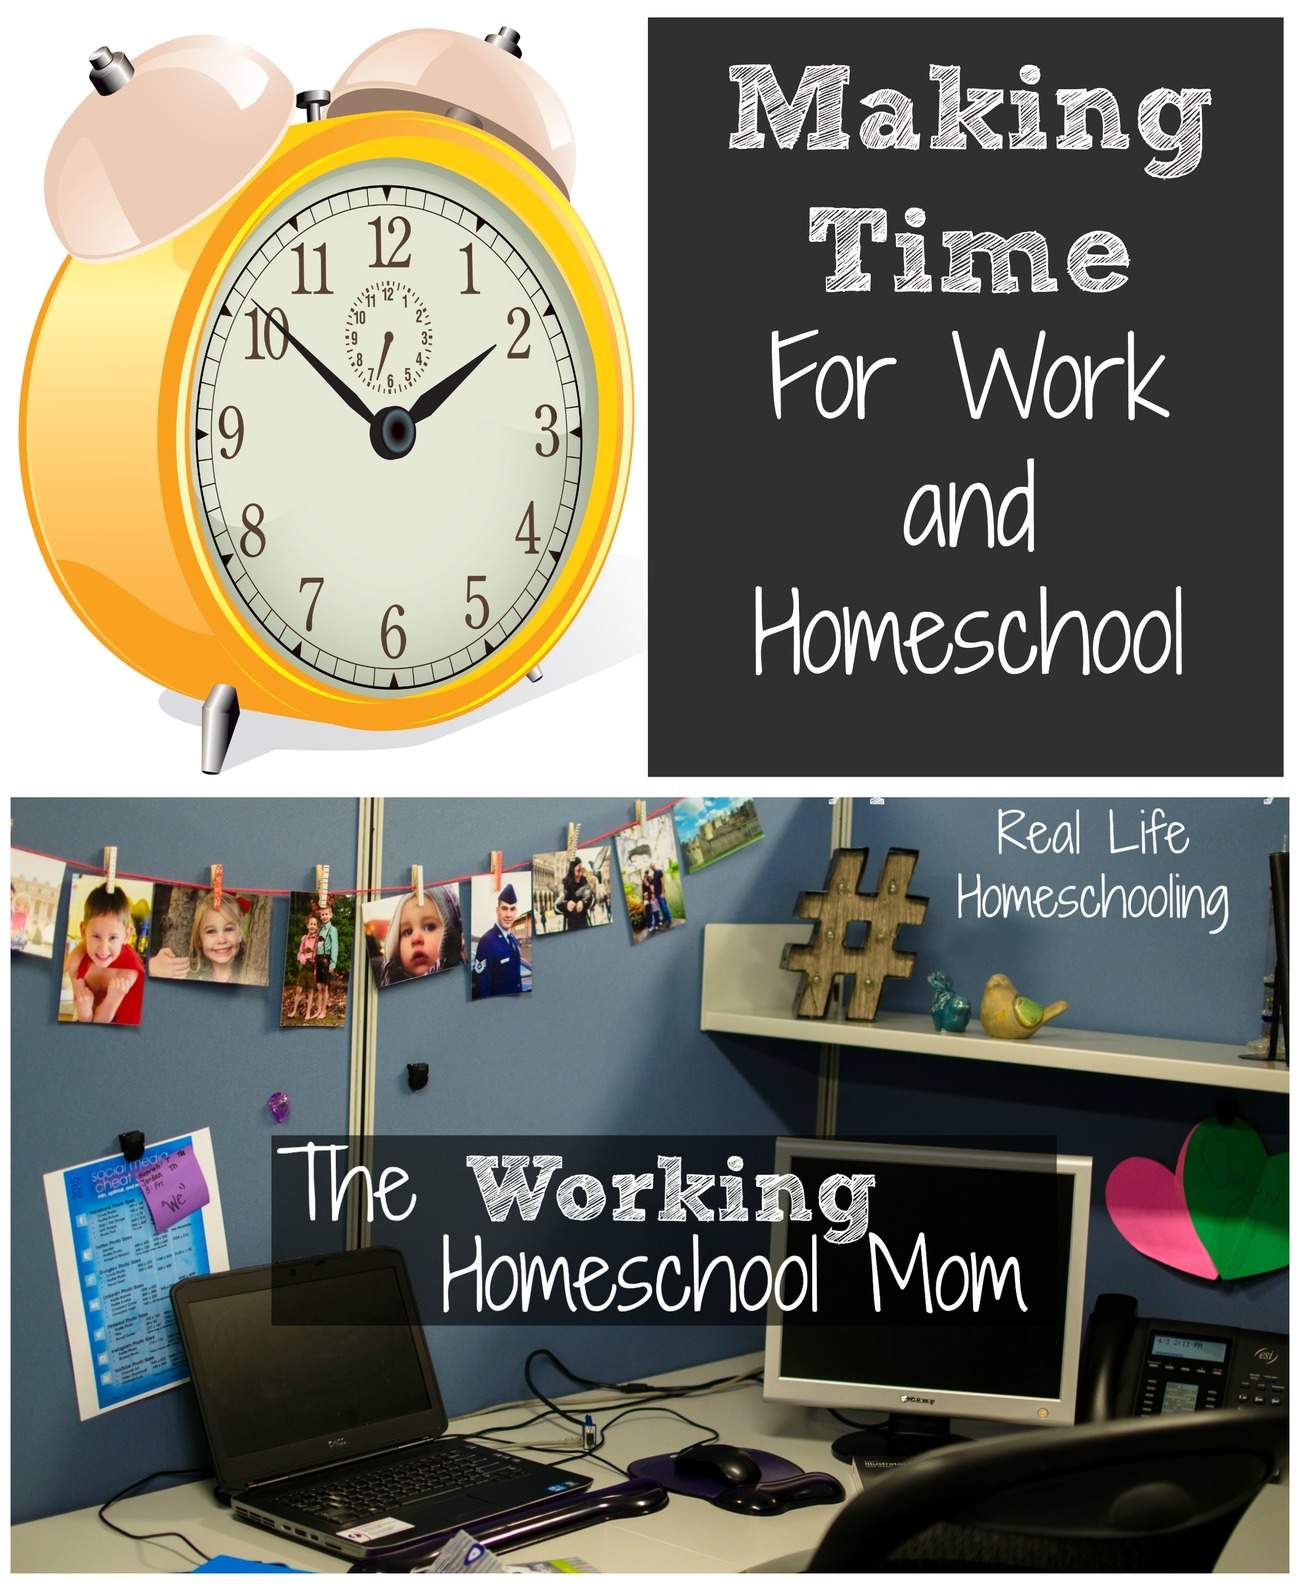 The Working Homeschool Mom: Scheduling